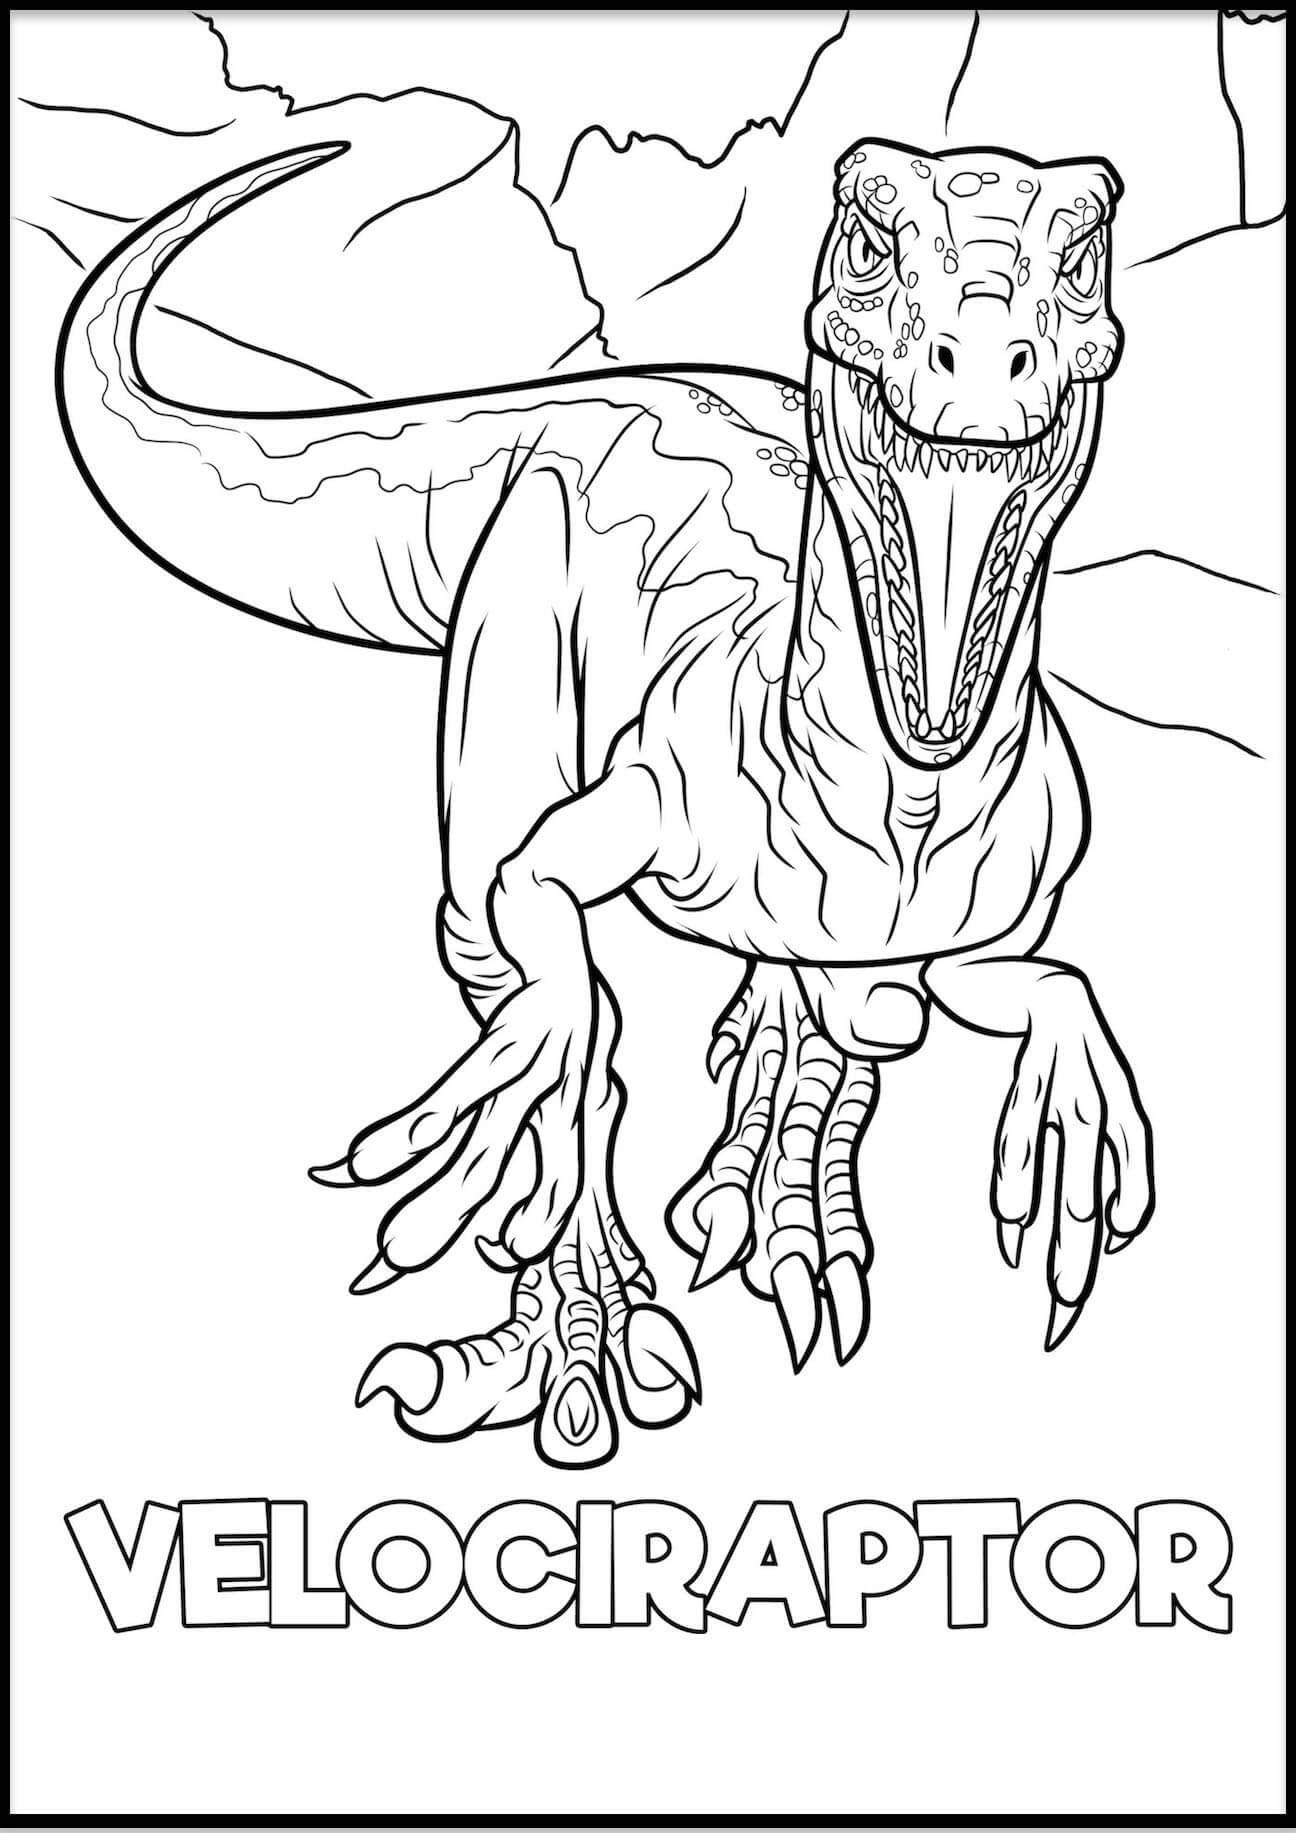 Velociraptor omalovánka